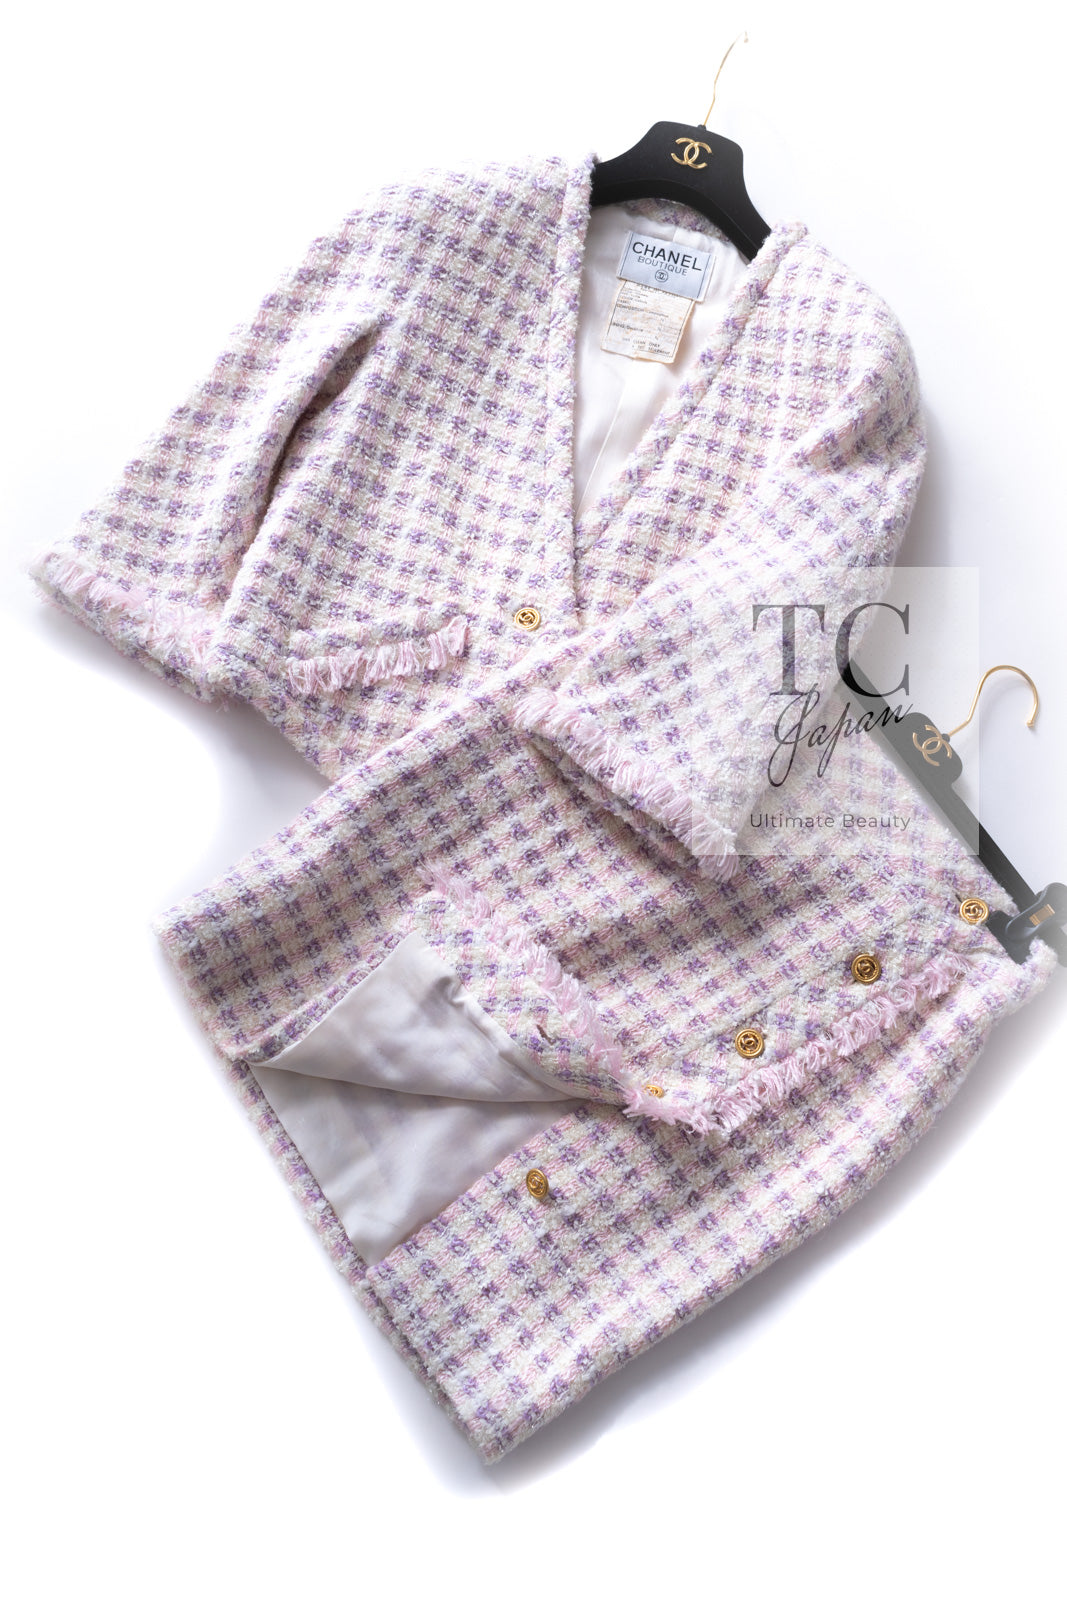 CHANEL 92S Vintage Pink Purple Ivory Claudia Tweed Jacket Skirt Suit 38 40 シャネル ヴィンテージ ピンク パープル アイボリー ツイード ジャケット スカート スーツ スーパーモデル着 即発